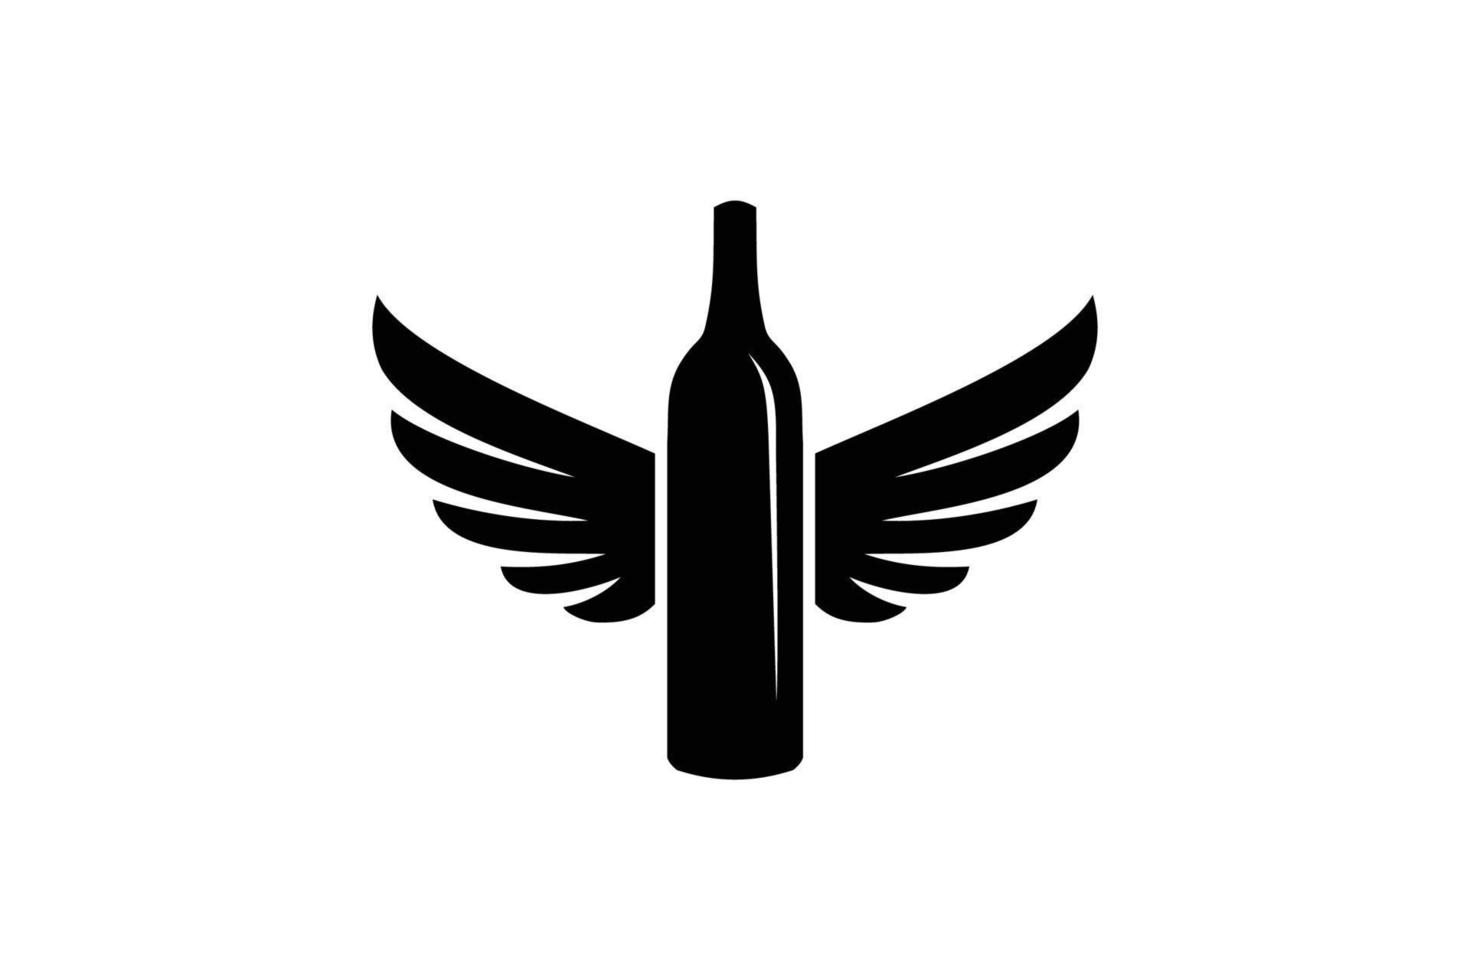 engel wijn logo ontwerpsjabloon. vector